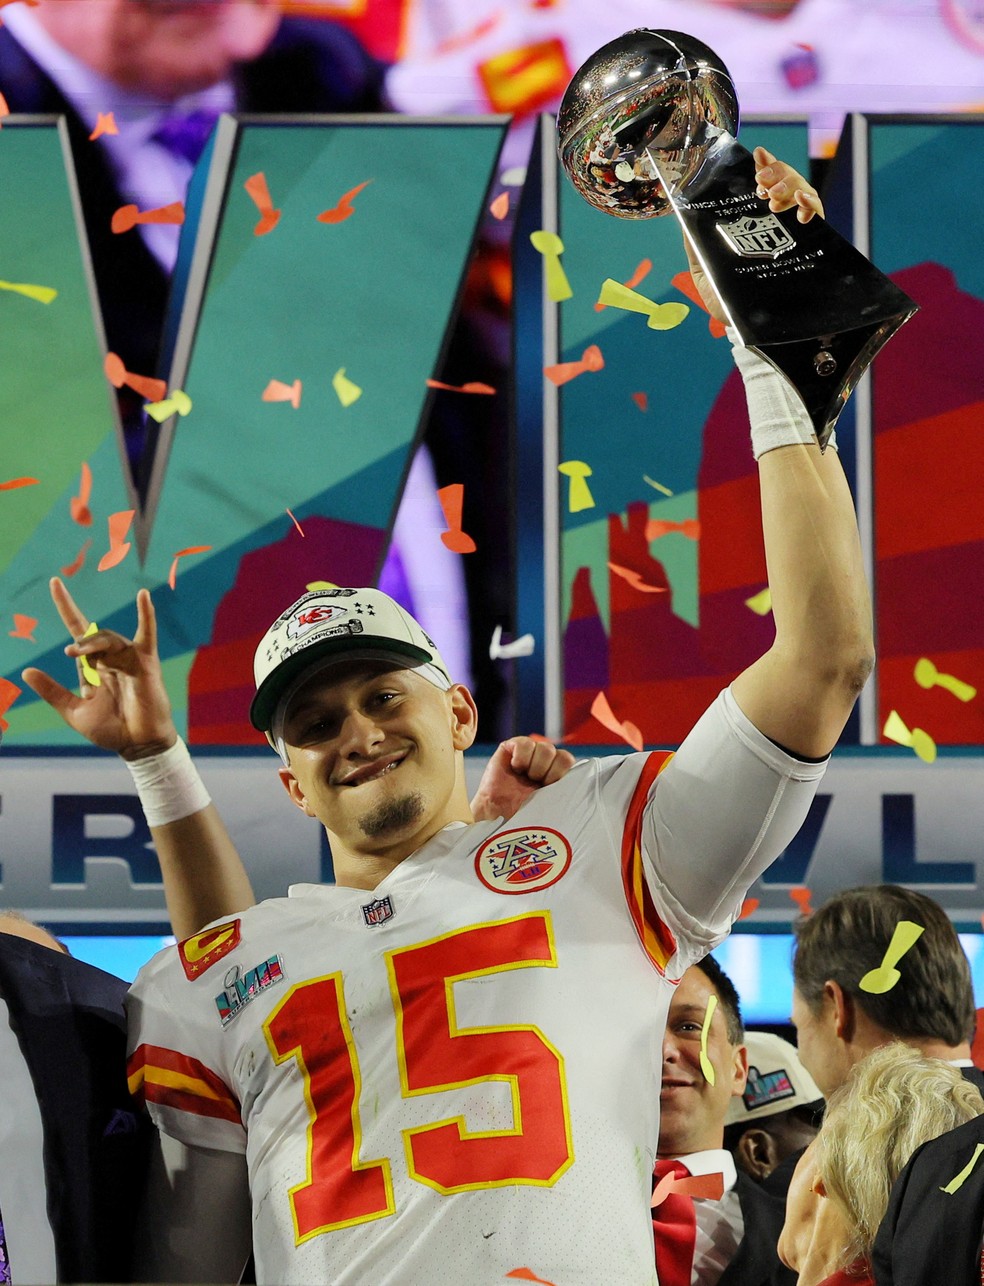 NFL All Day: liga de futebol americano lança NFTs com quarterback campeão  do Super Bowl